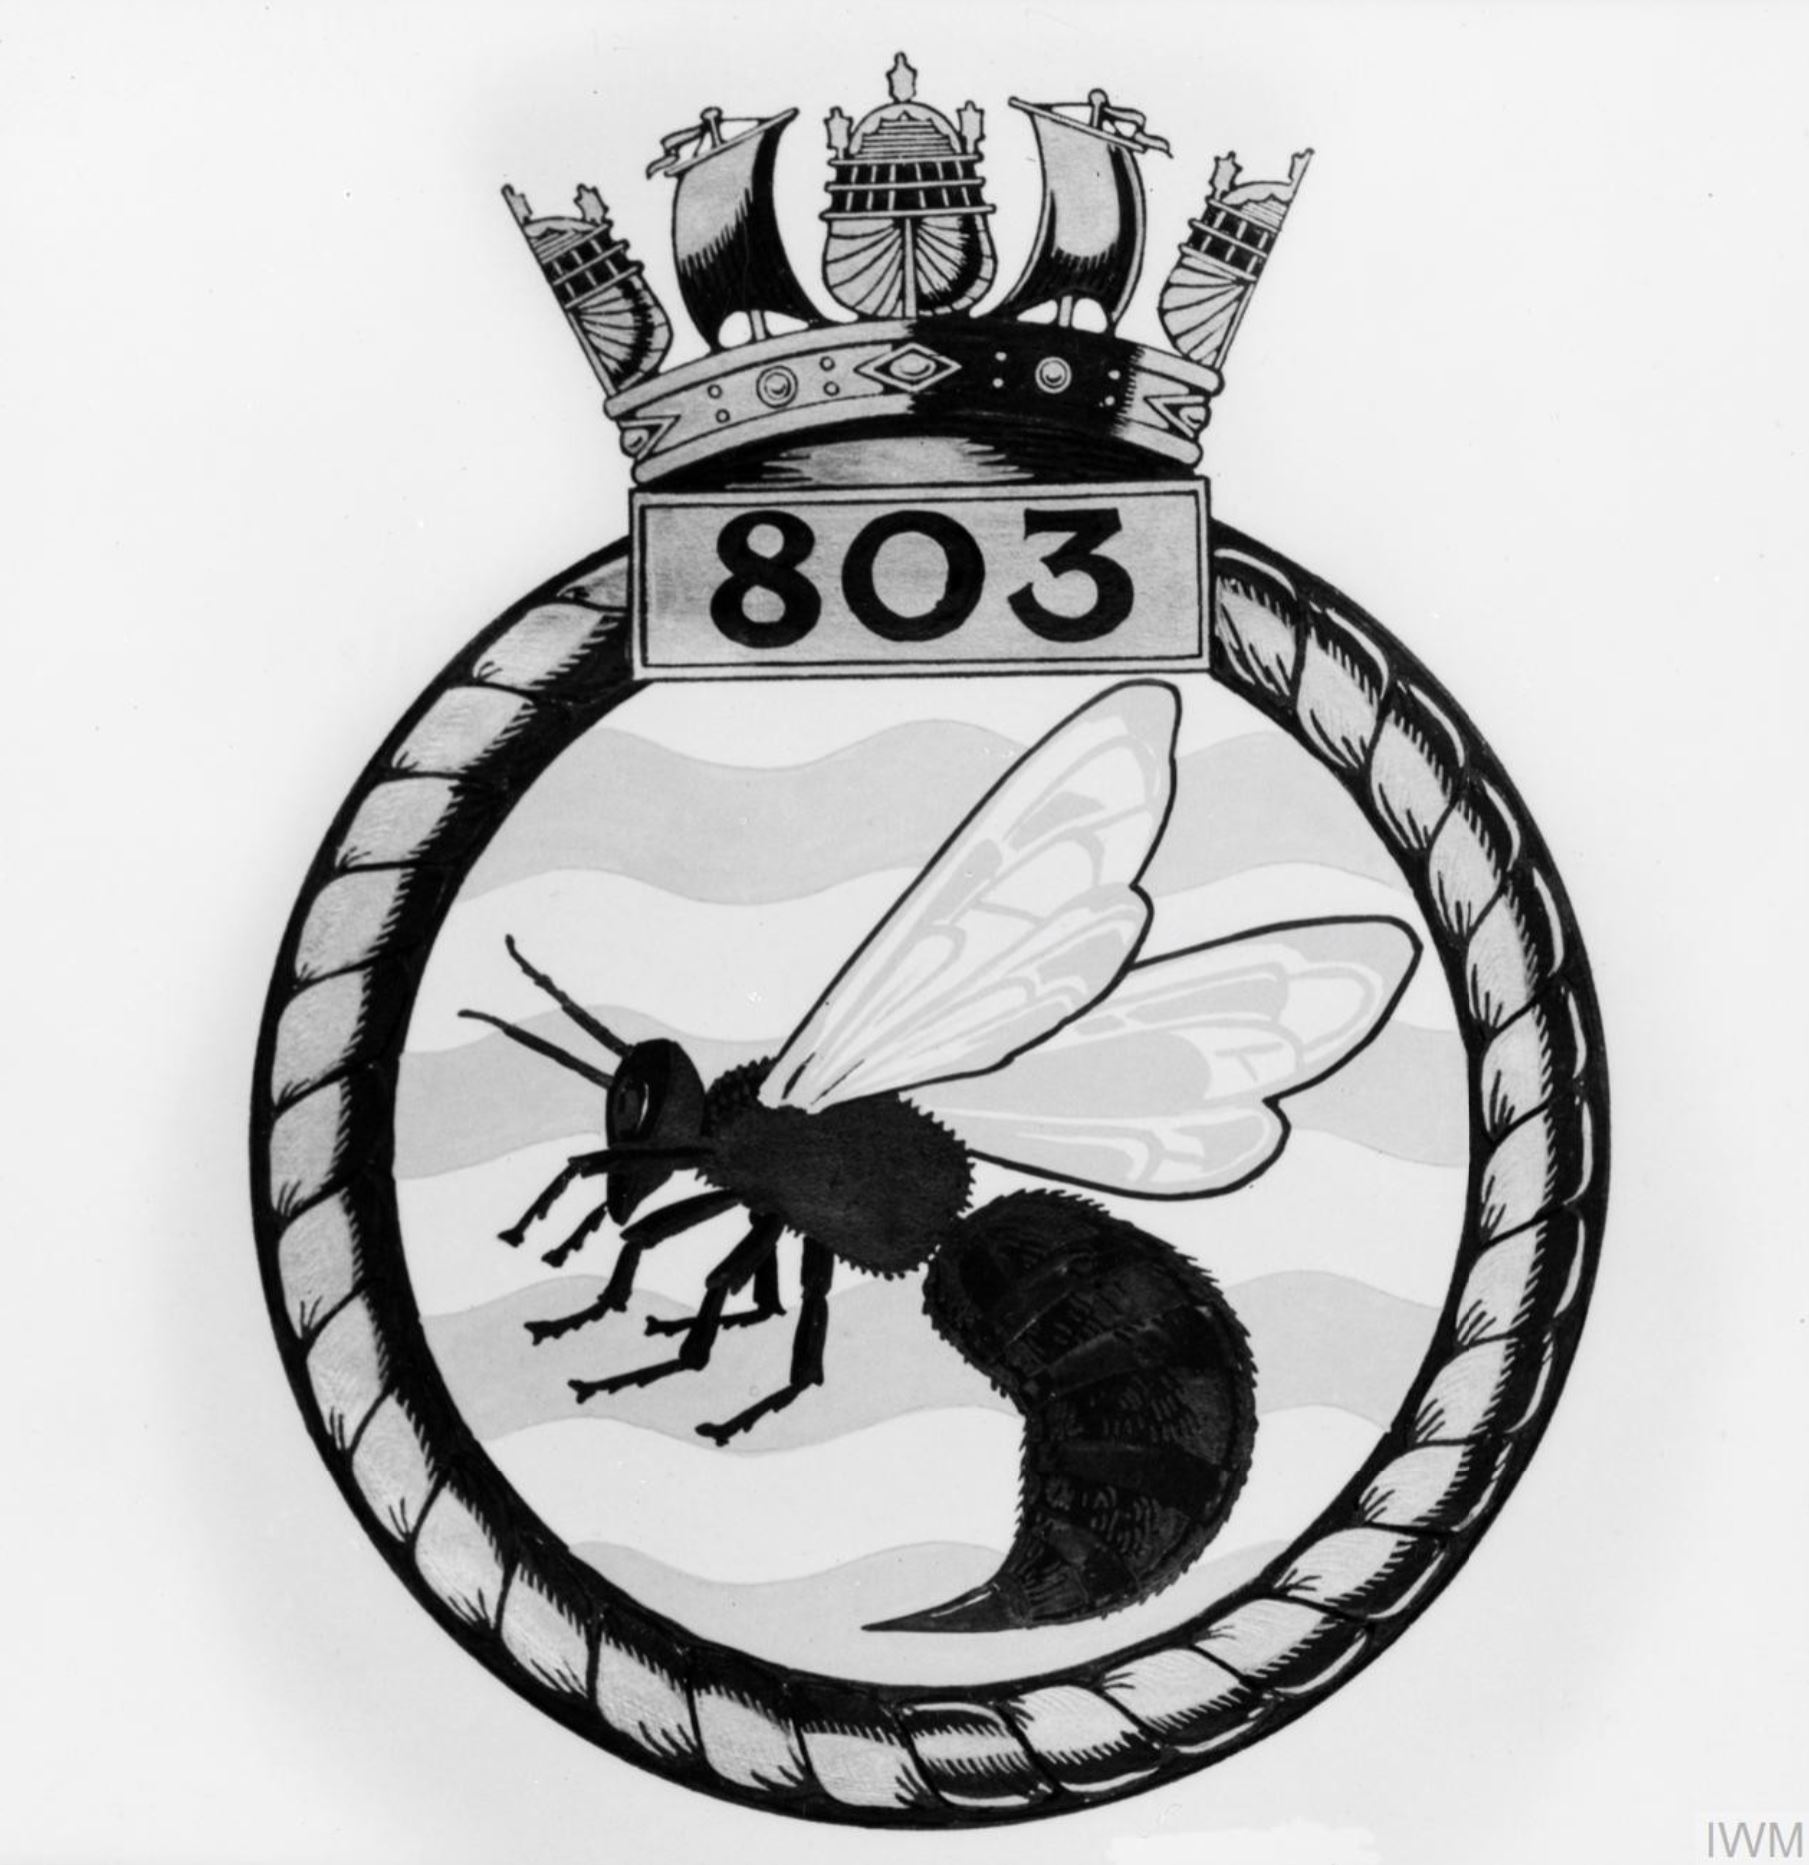 Fleet Air Arm crest of 803 Squadron IWM A26774